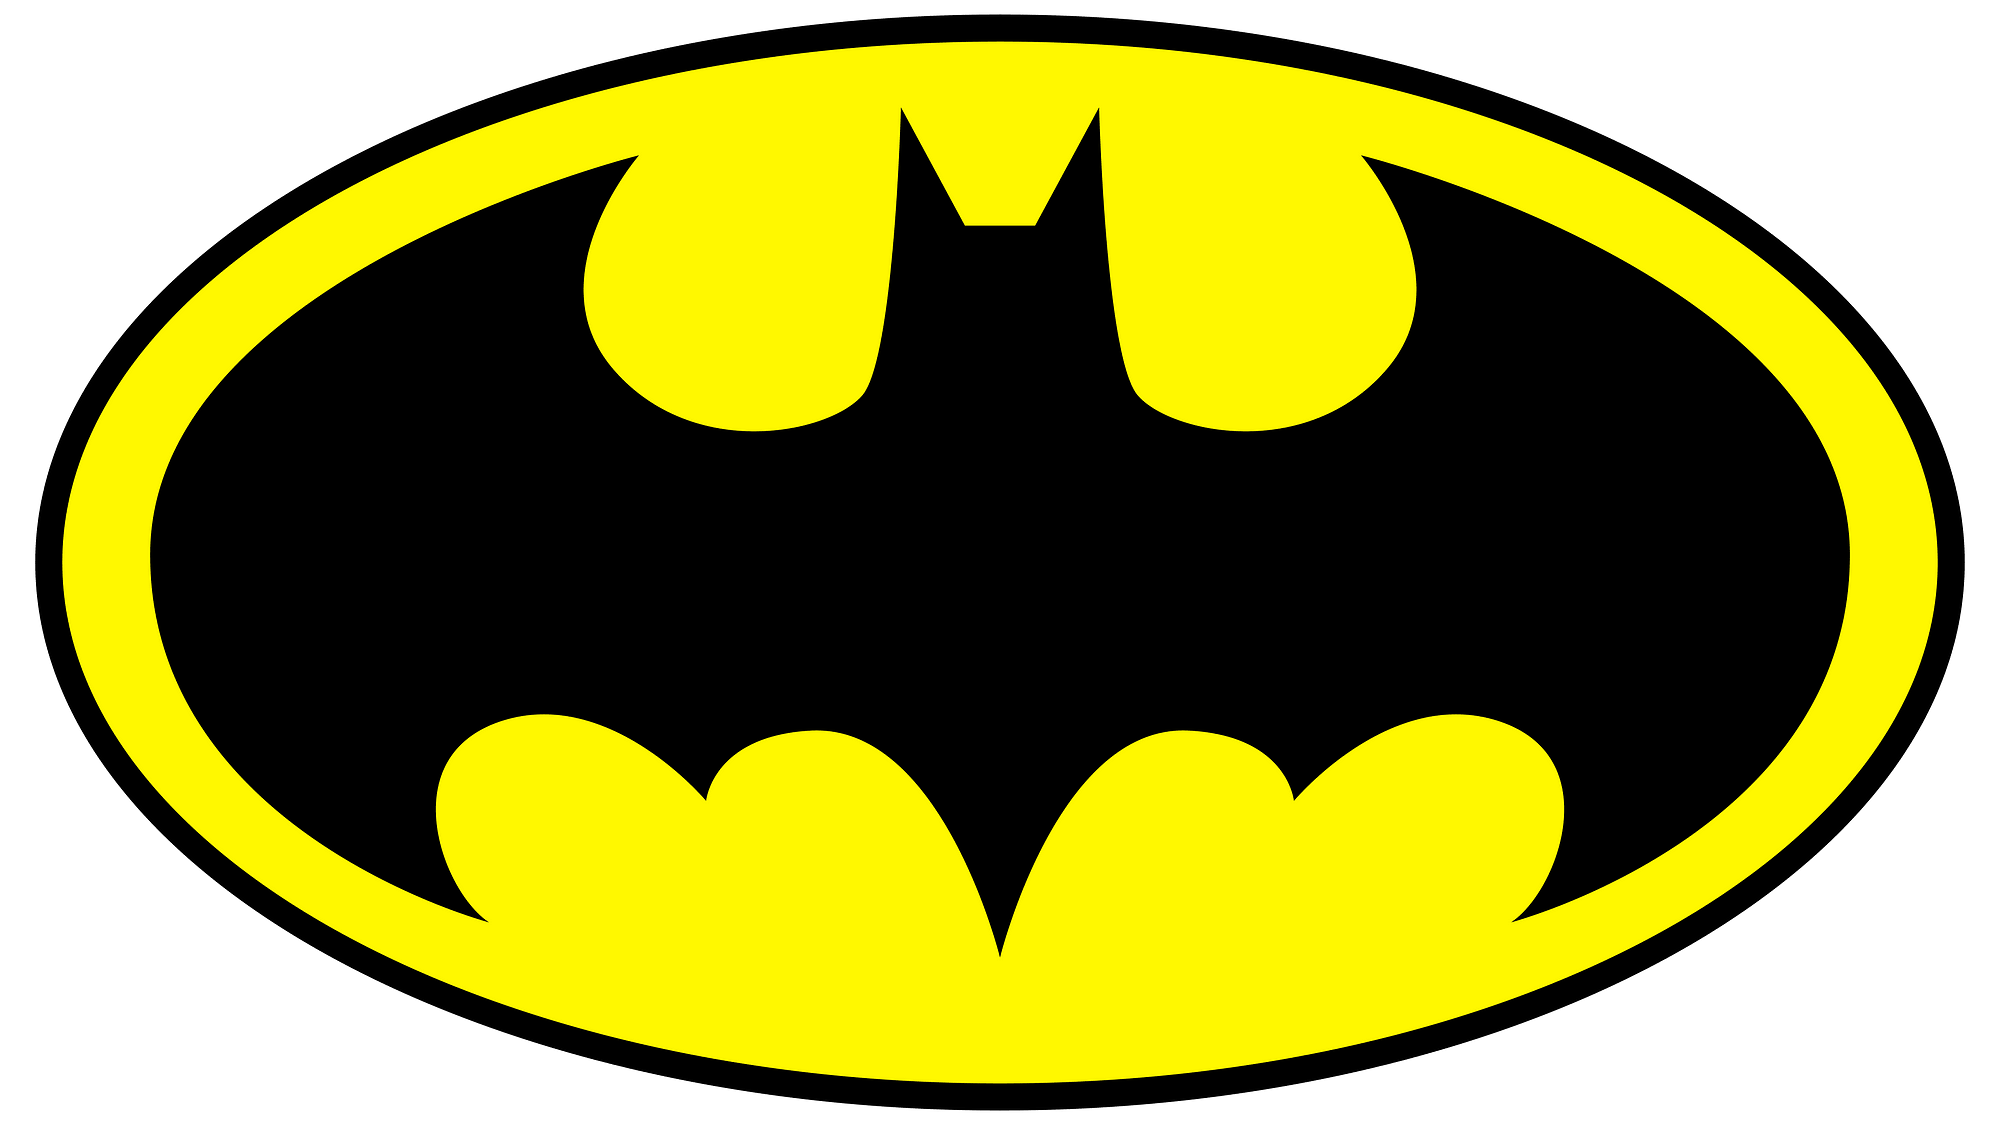 蝙蝠侠标志是众所周知的徽标。